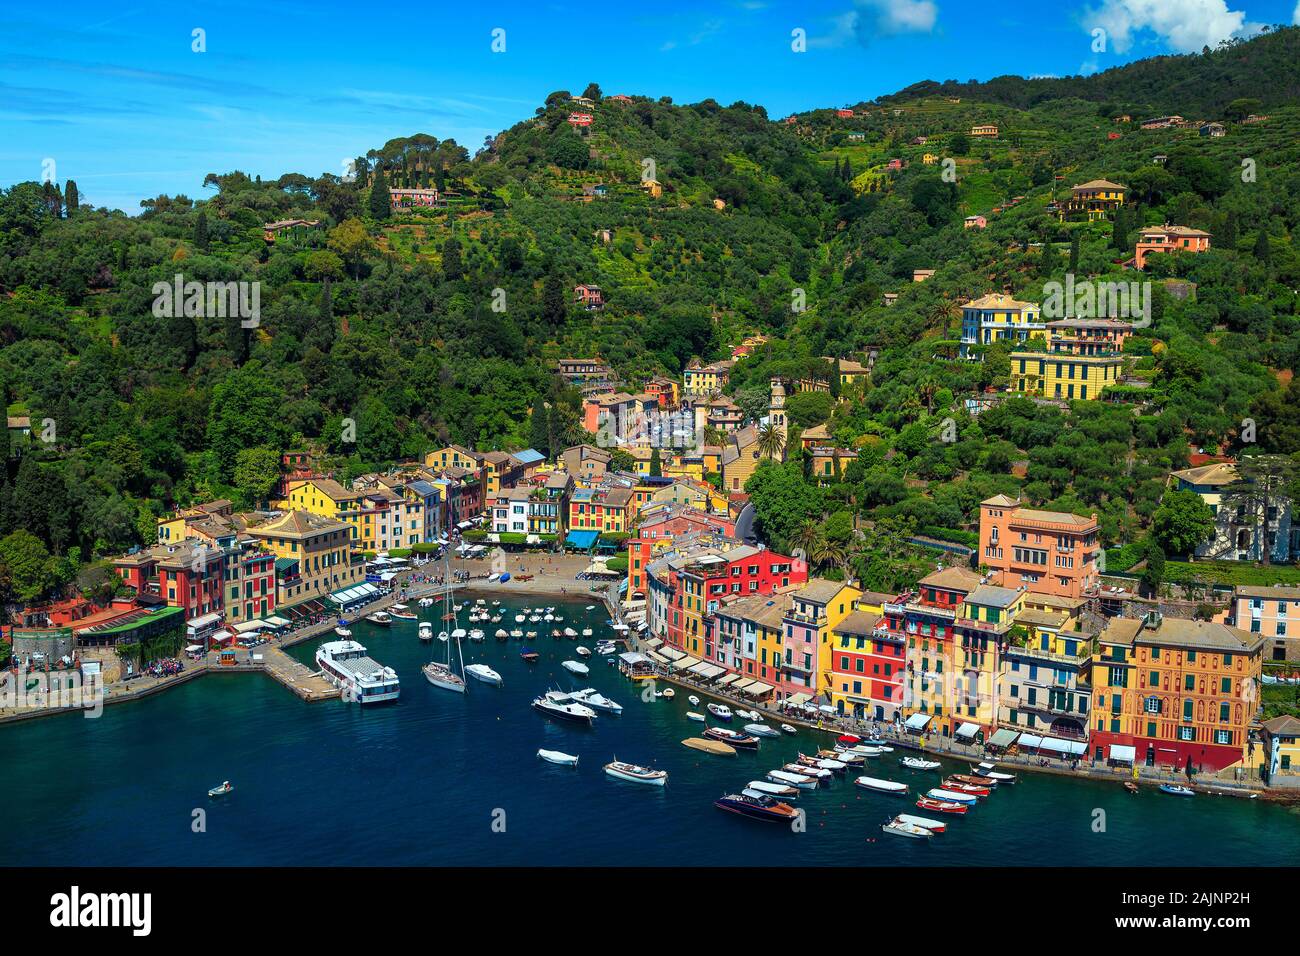 Locations populaires et de déplacement en Ligurie. Portofino admirable complexe méditerranéen avec des bâtiments colorés et bateaux de luxe, yachts. Très belle vue Banque D'Images